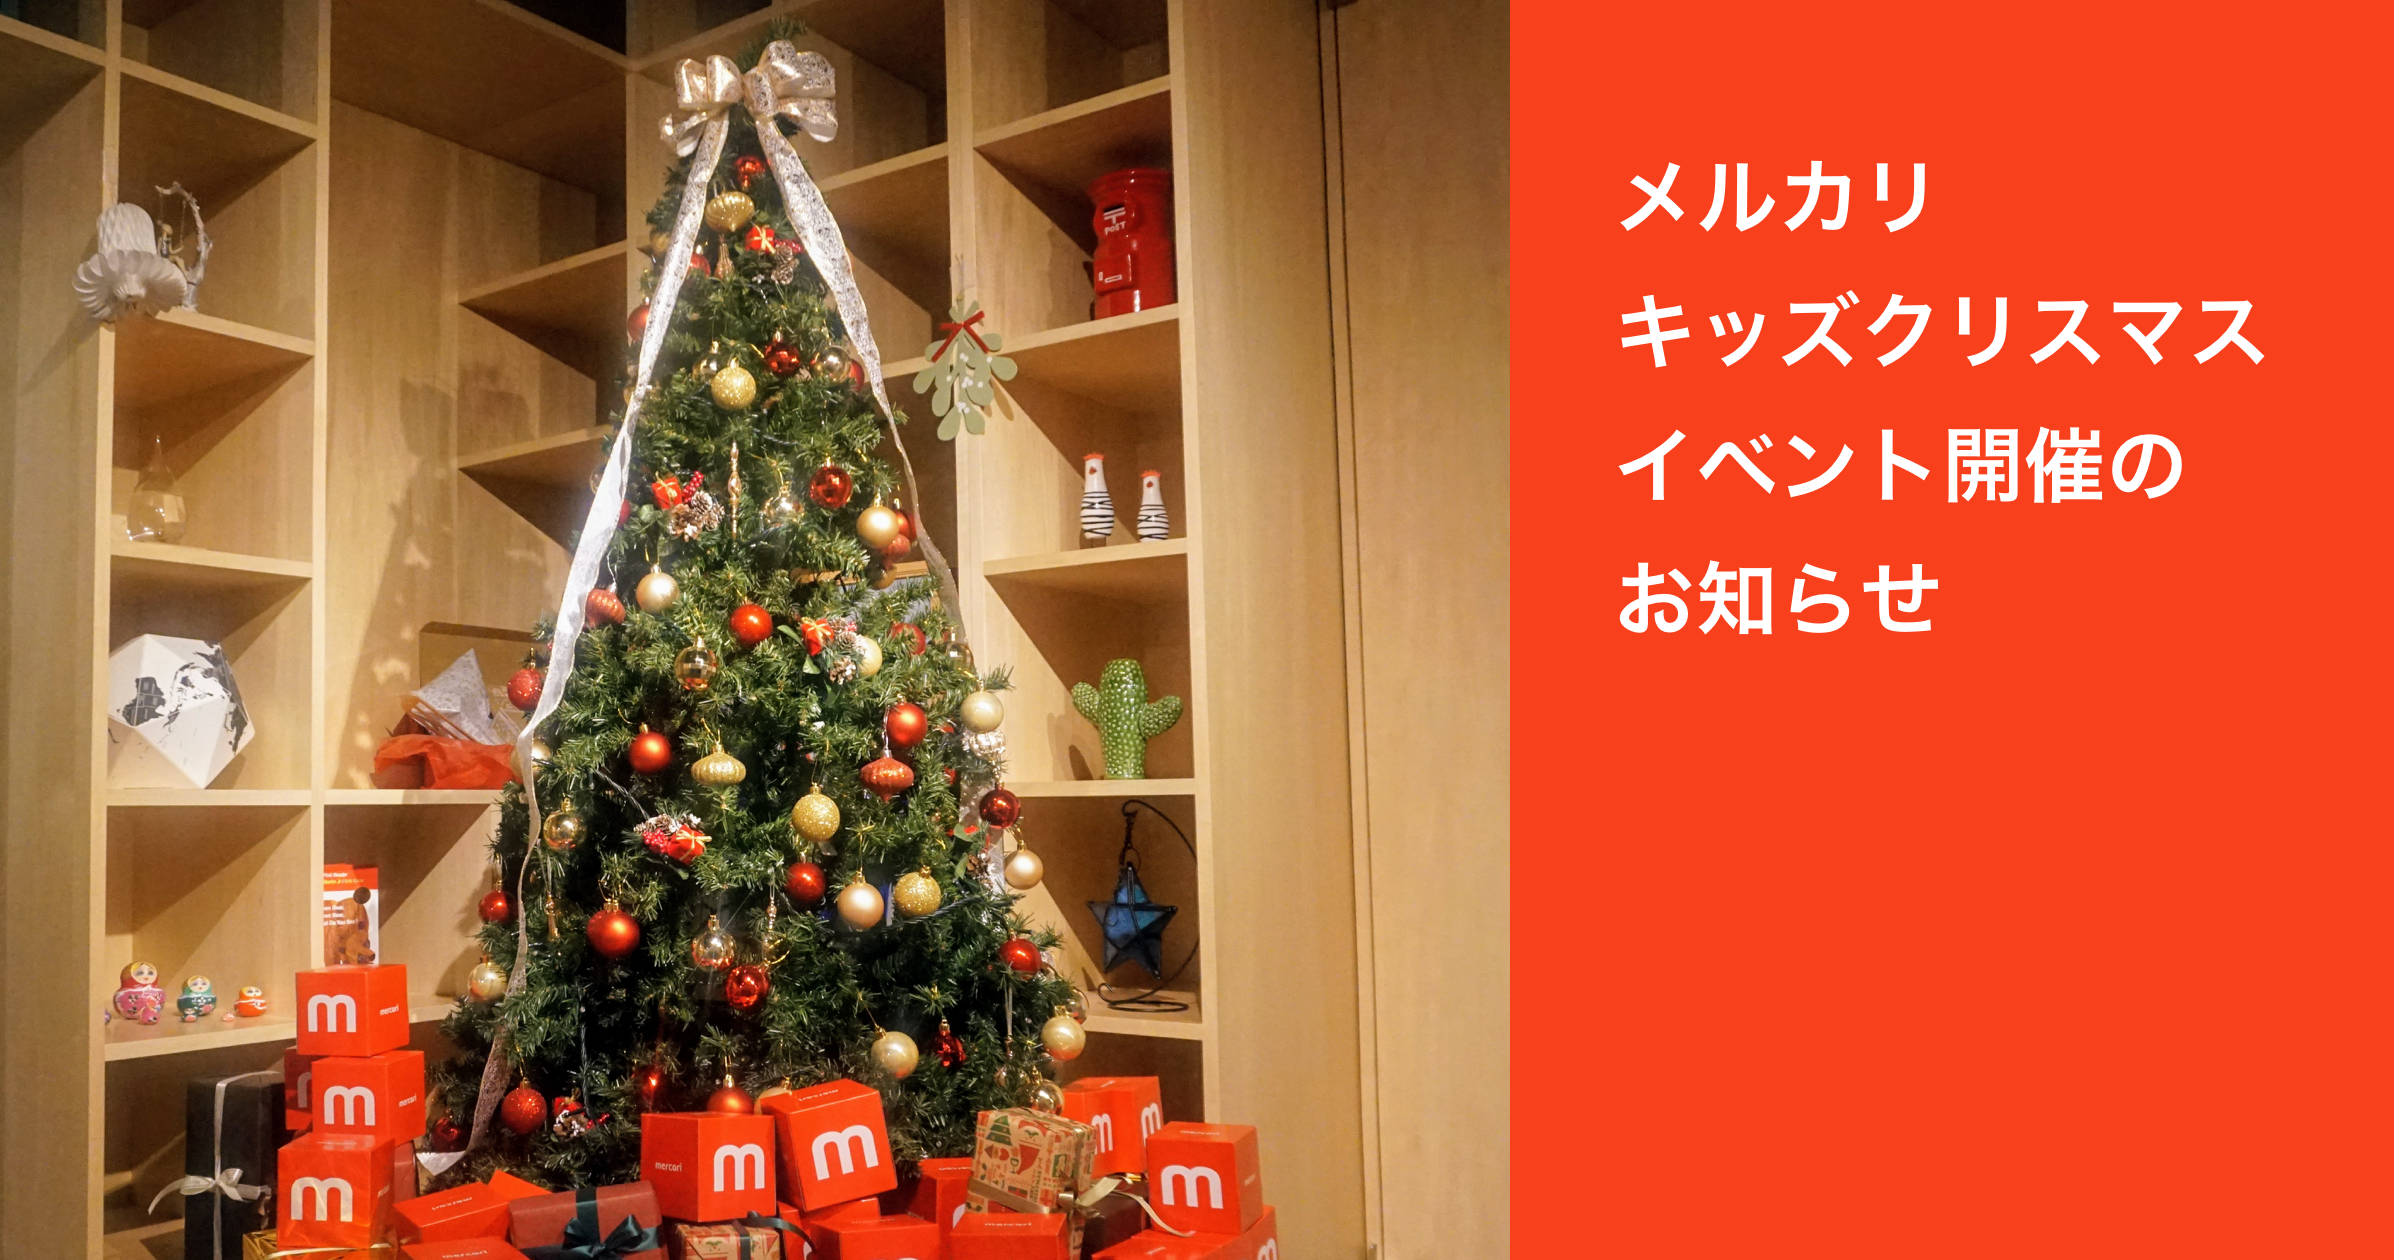 【イベント開催のお知らせ】 12/23(日)メルカリ キッズ クリスマス